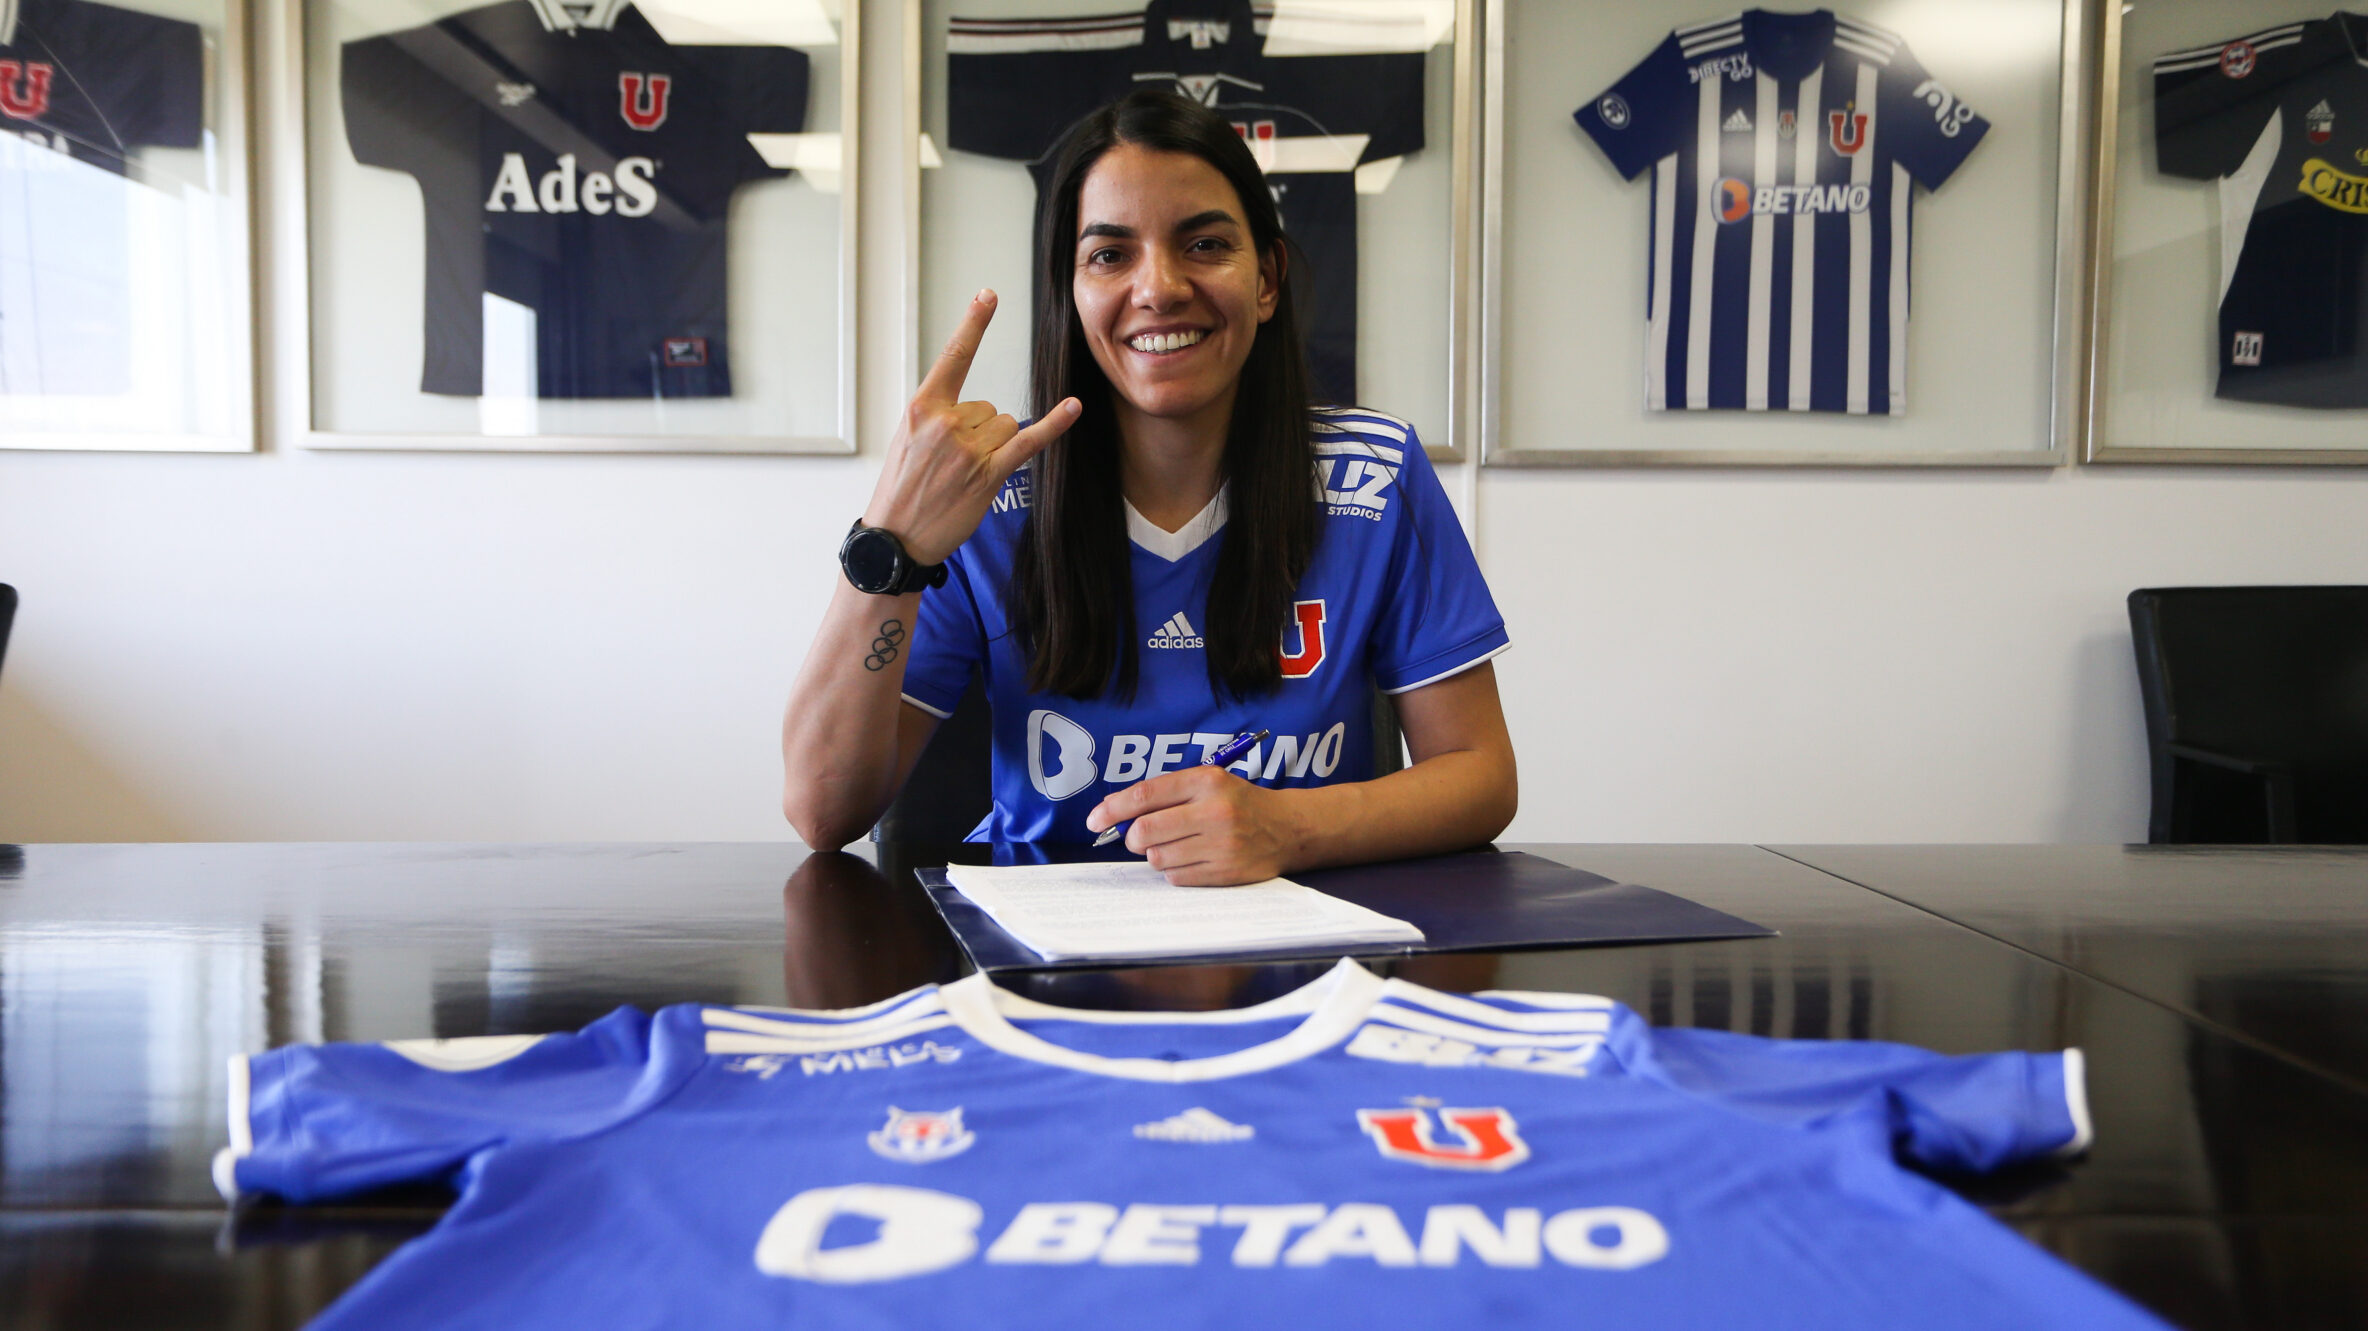 Ya son 10 renovadas: Natalia Campos firma contrato con la U hasta 2024